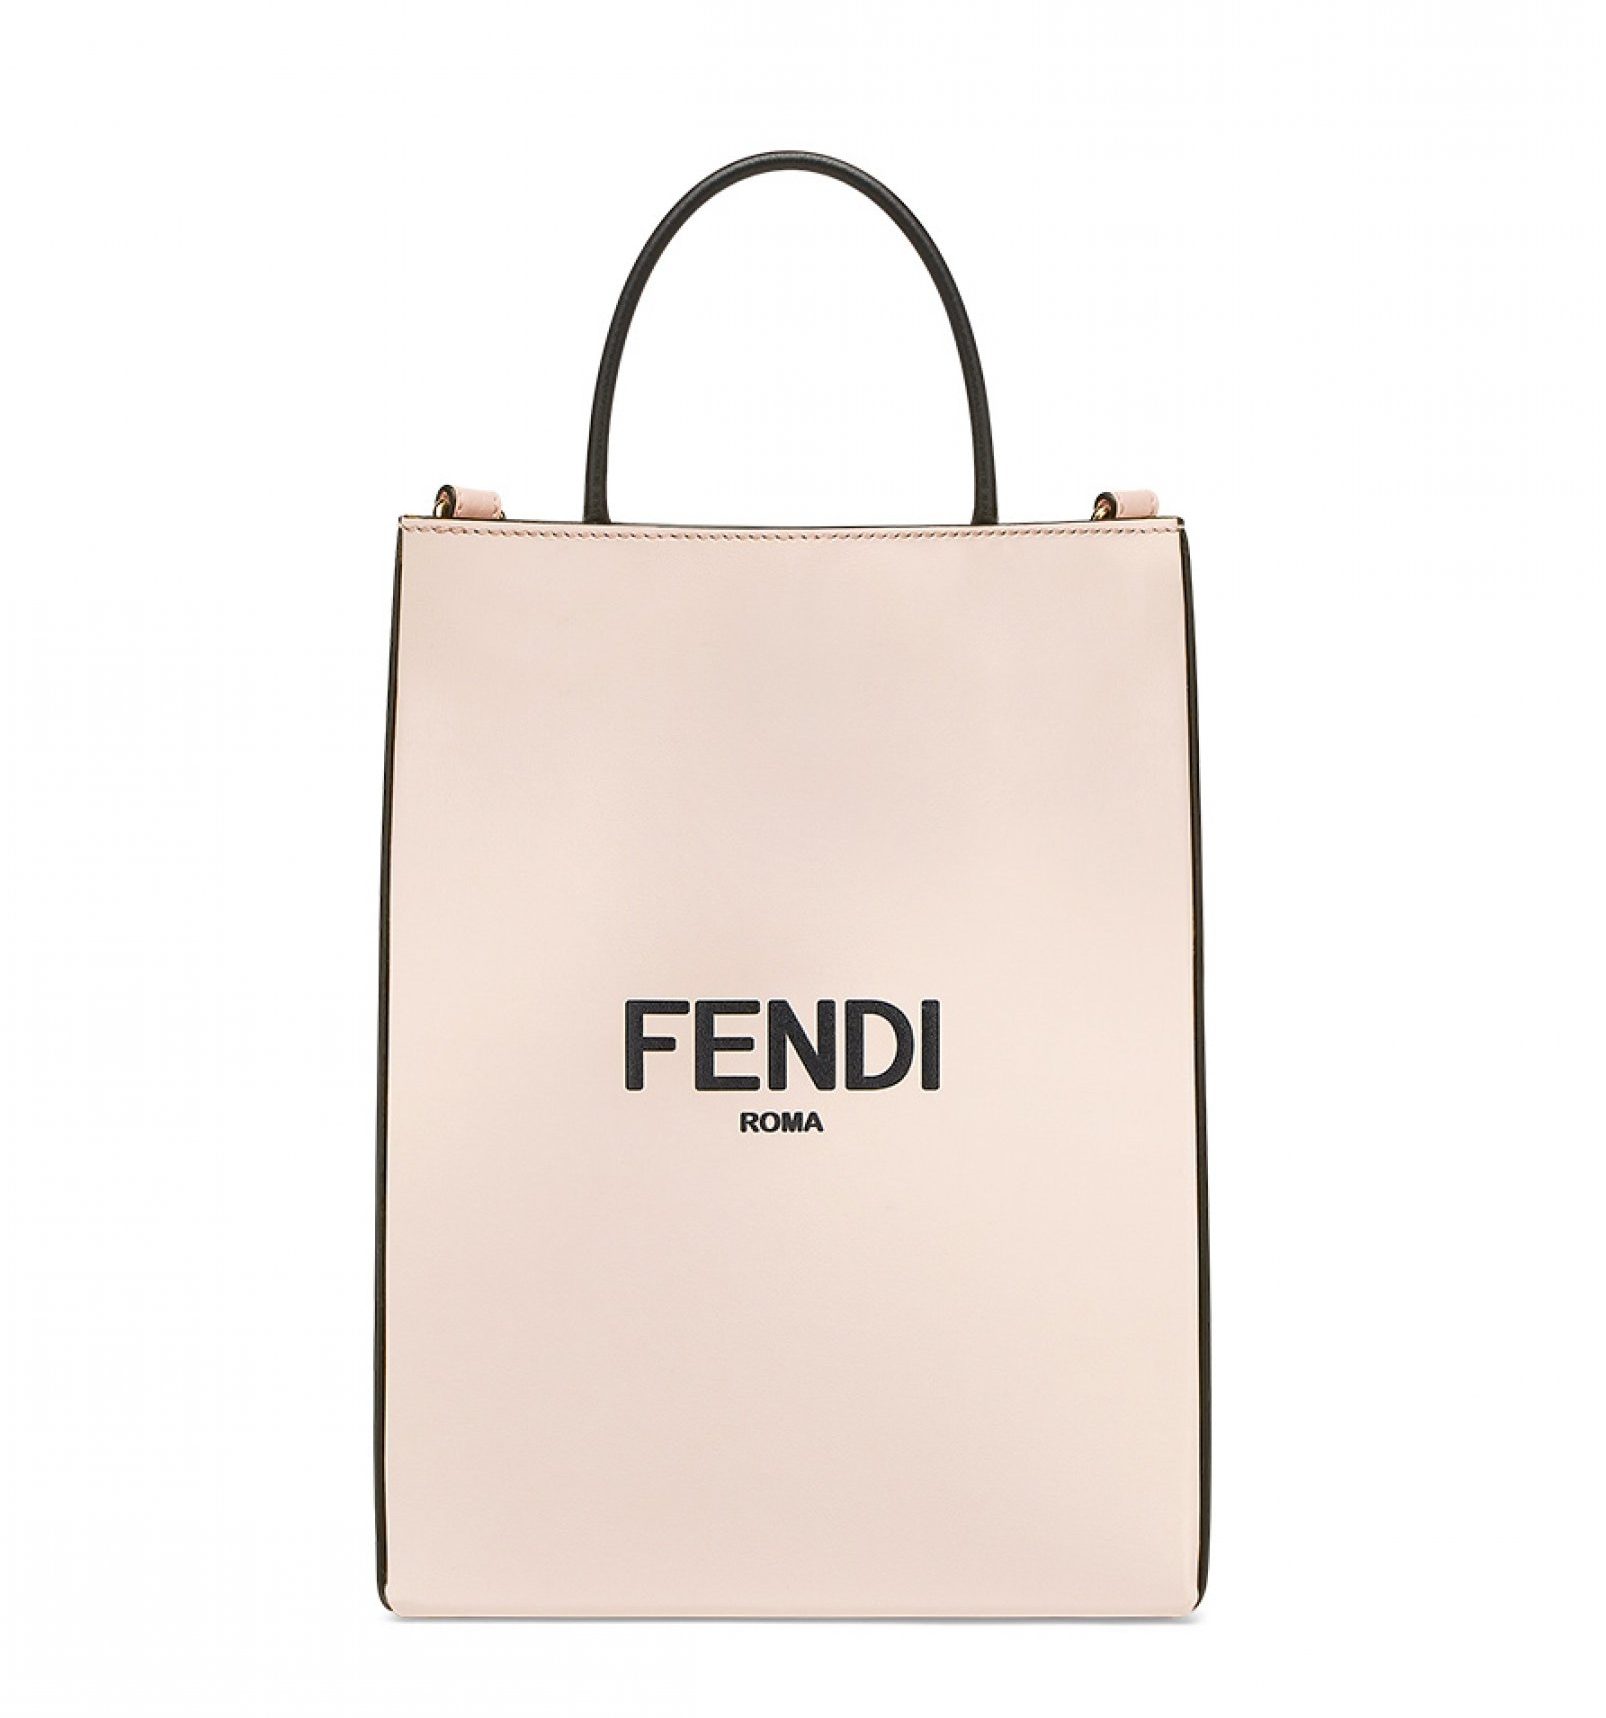 モード派さんのアガれるバッグは”ショッパーみたい”な「フェンディ 